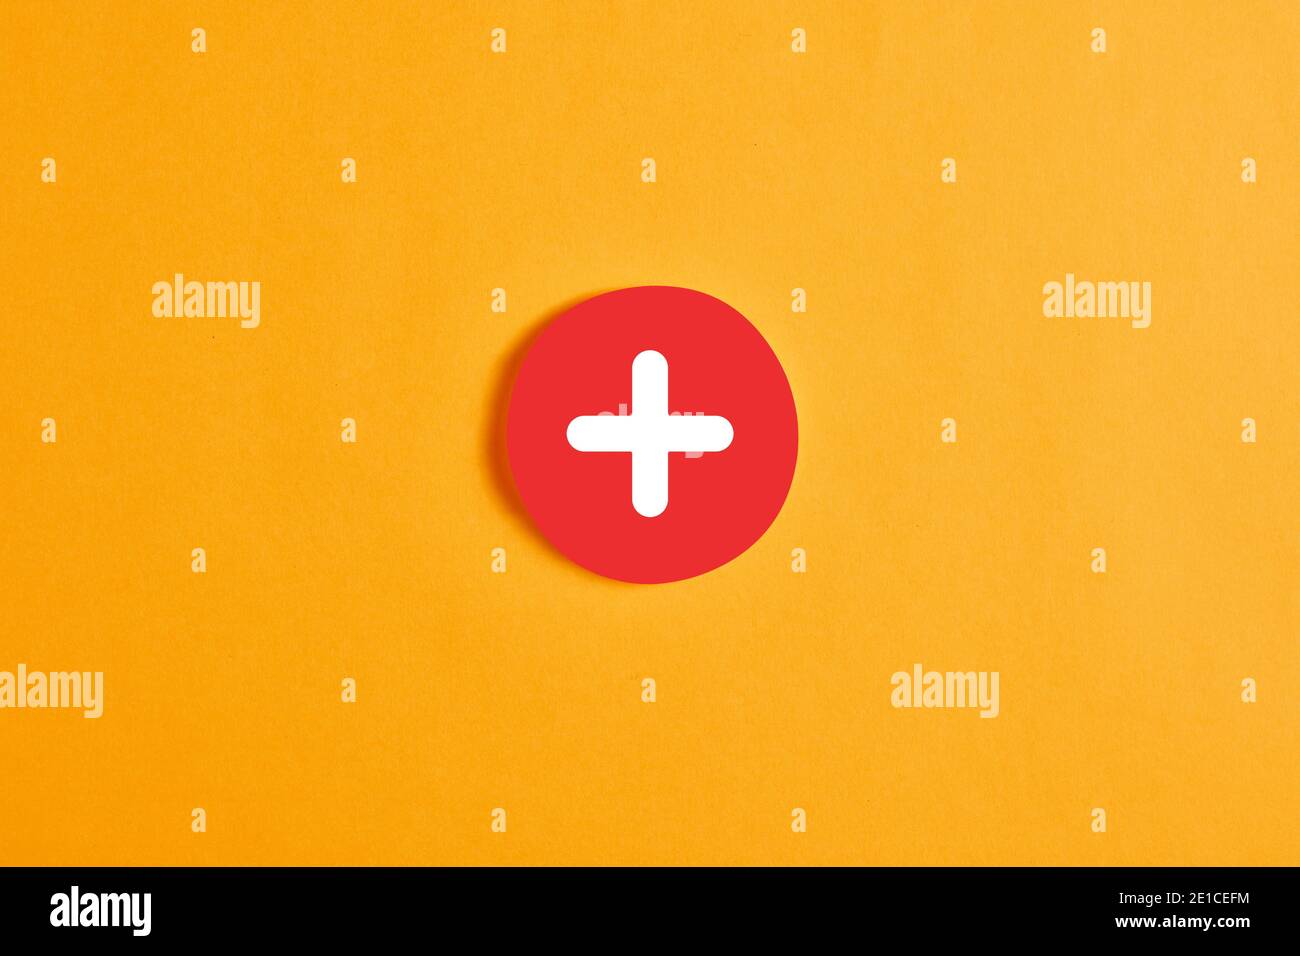 Cercle rond rouge avec un bouton ou une icône plus sur fond jaune. Banque D'Images